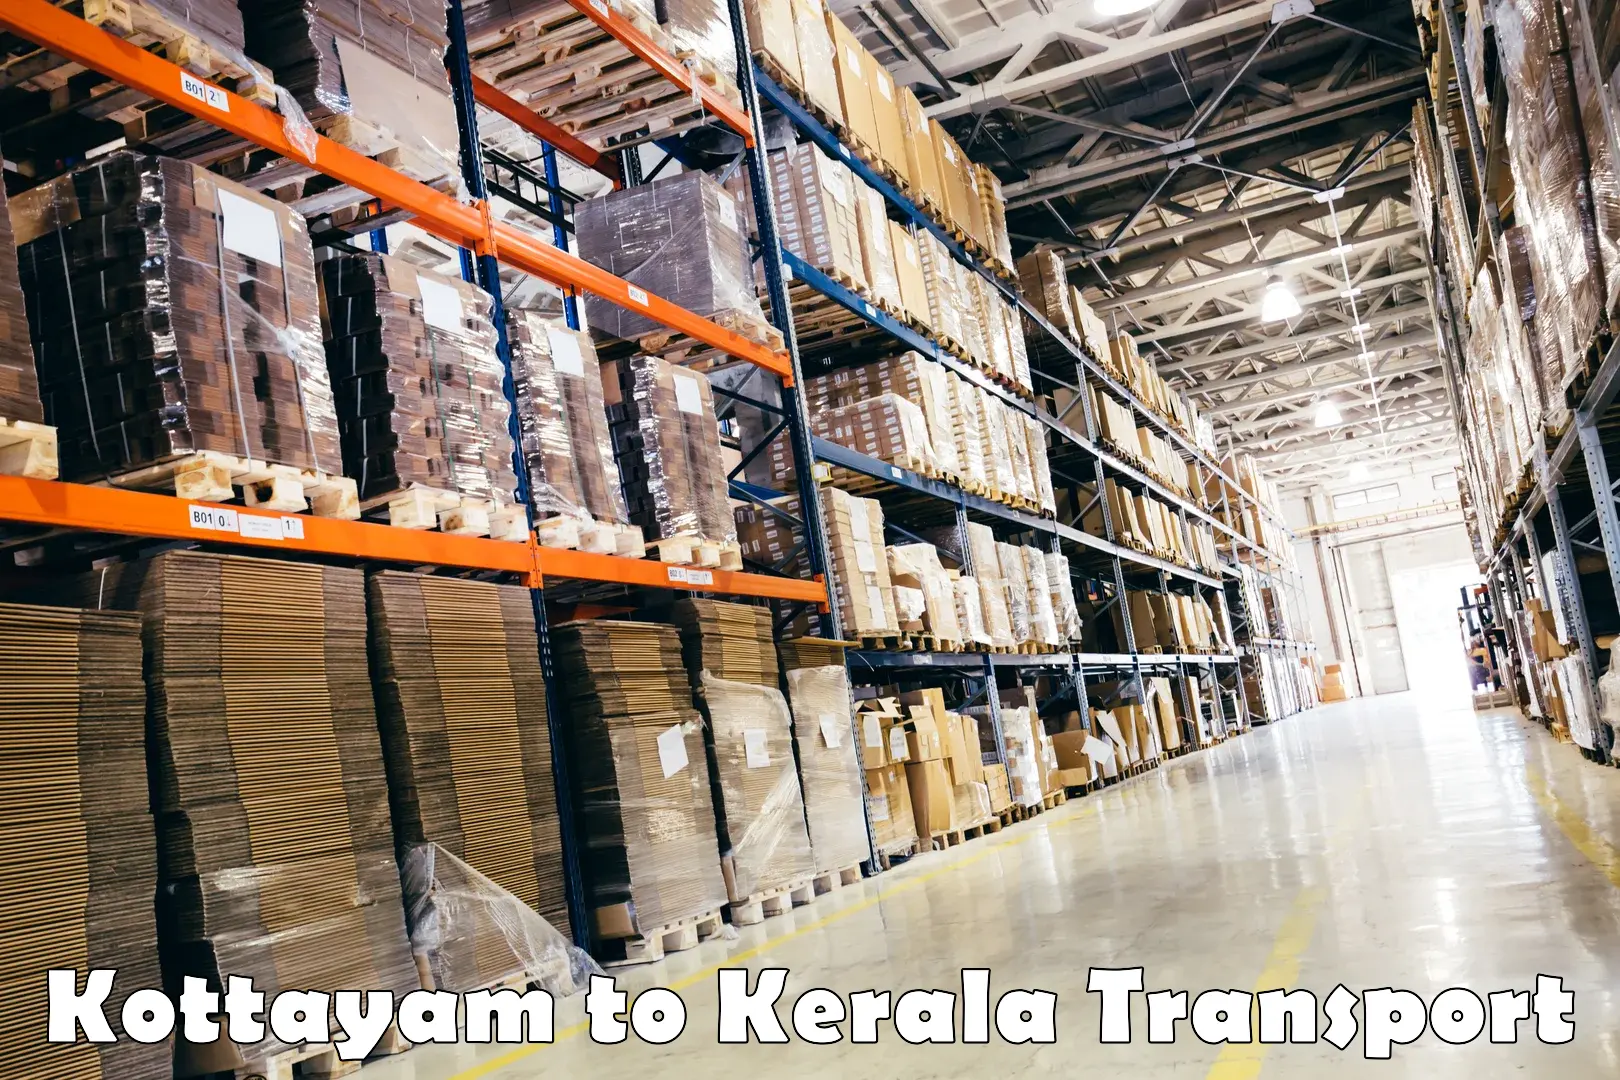 Nearest transport service Kottayam to Guruvayur